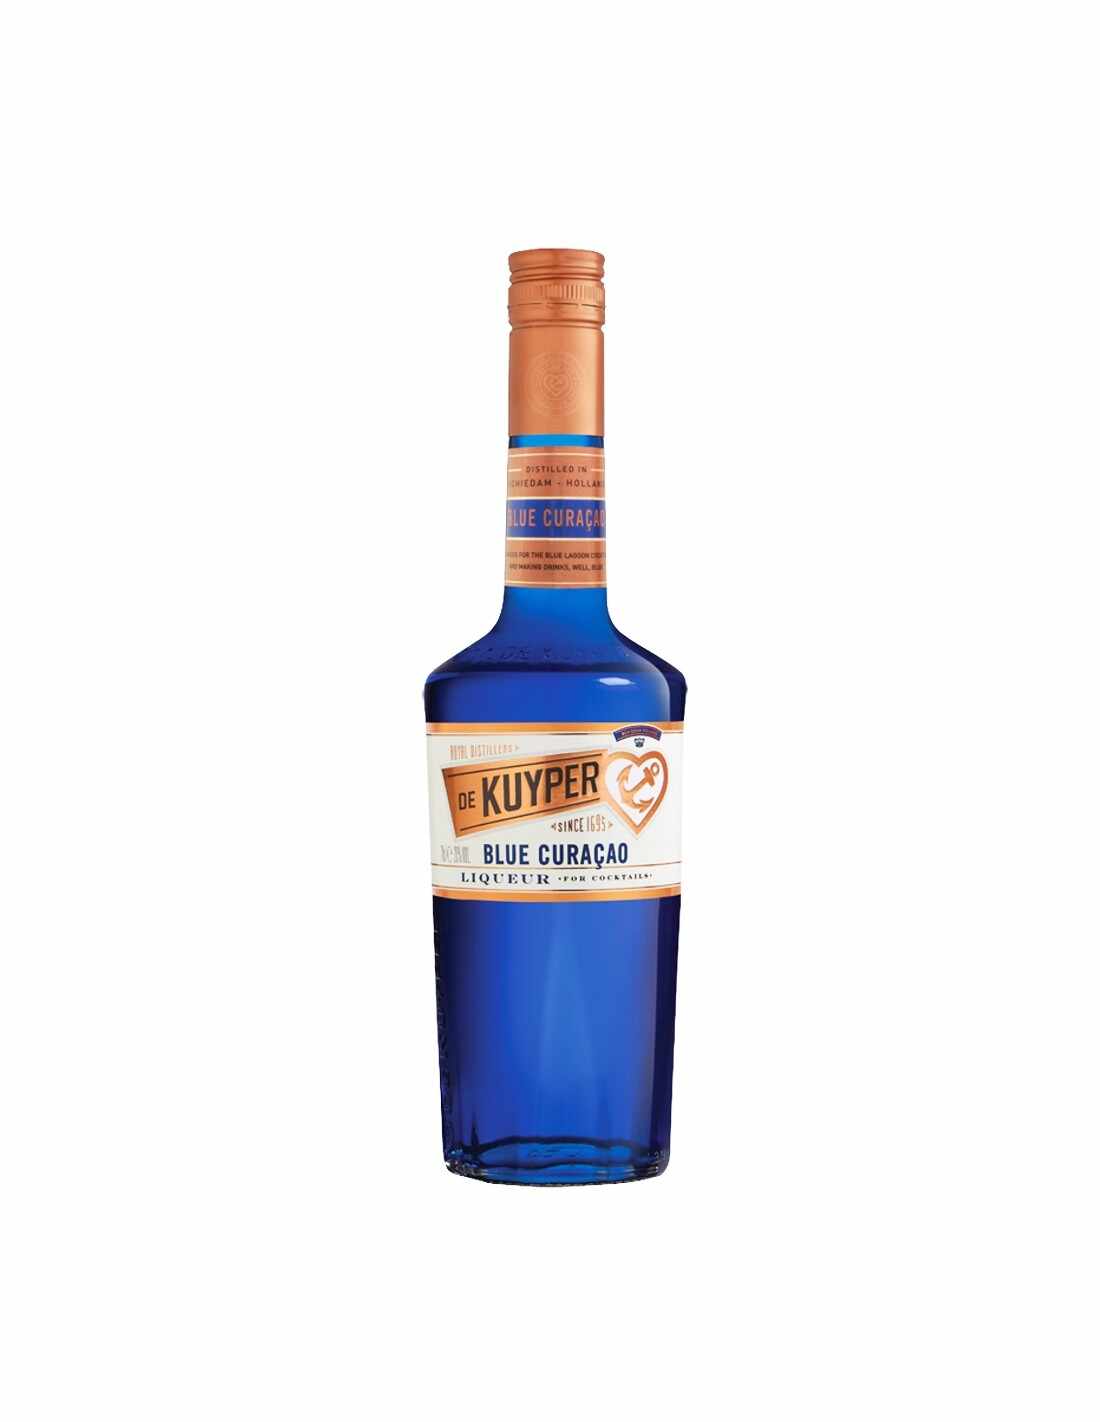 Lichior De Kuyper Blue Curacao 20% alc., 0.7L, Olanda